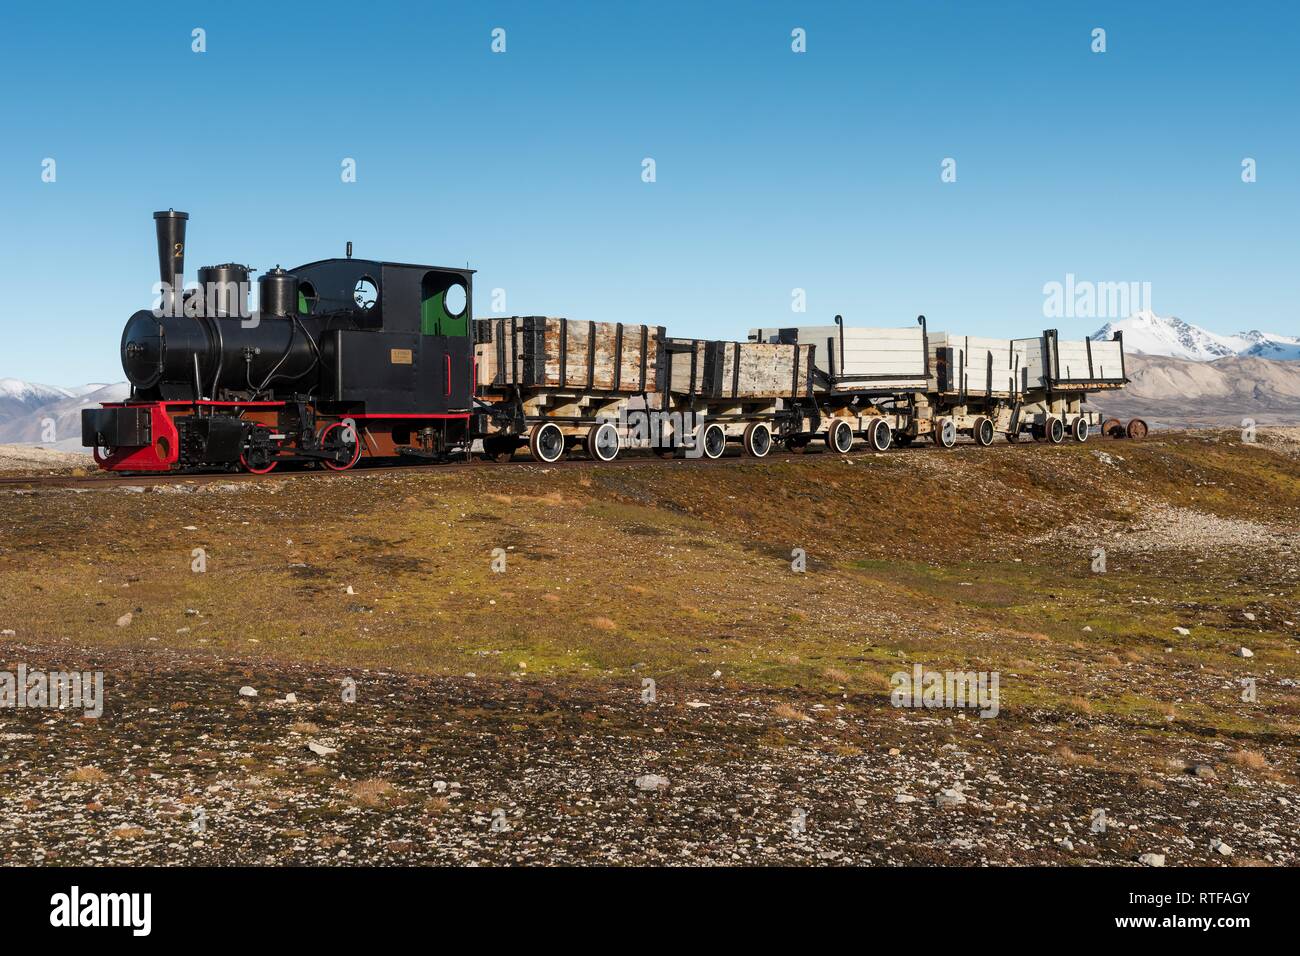 Miniera storico treno nella parte anteriore del Kongsfjorden, Ny-Alesund, Spitsbergen, isole Svalbard Isole Svalbard e Jan Mayen, Norvegia Foto Stock